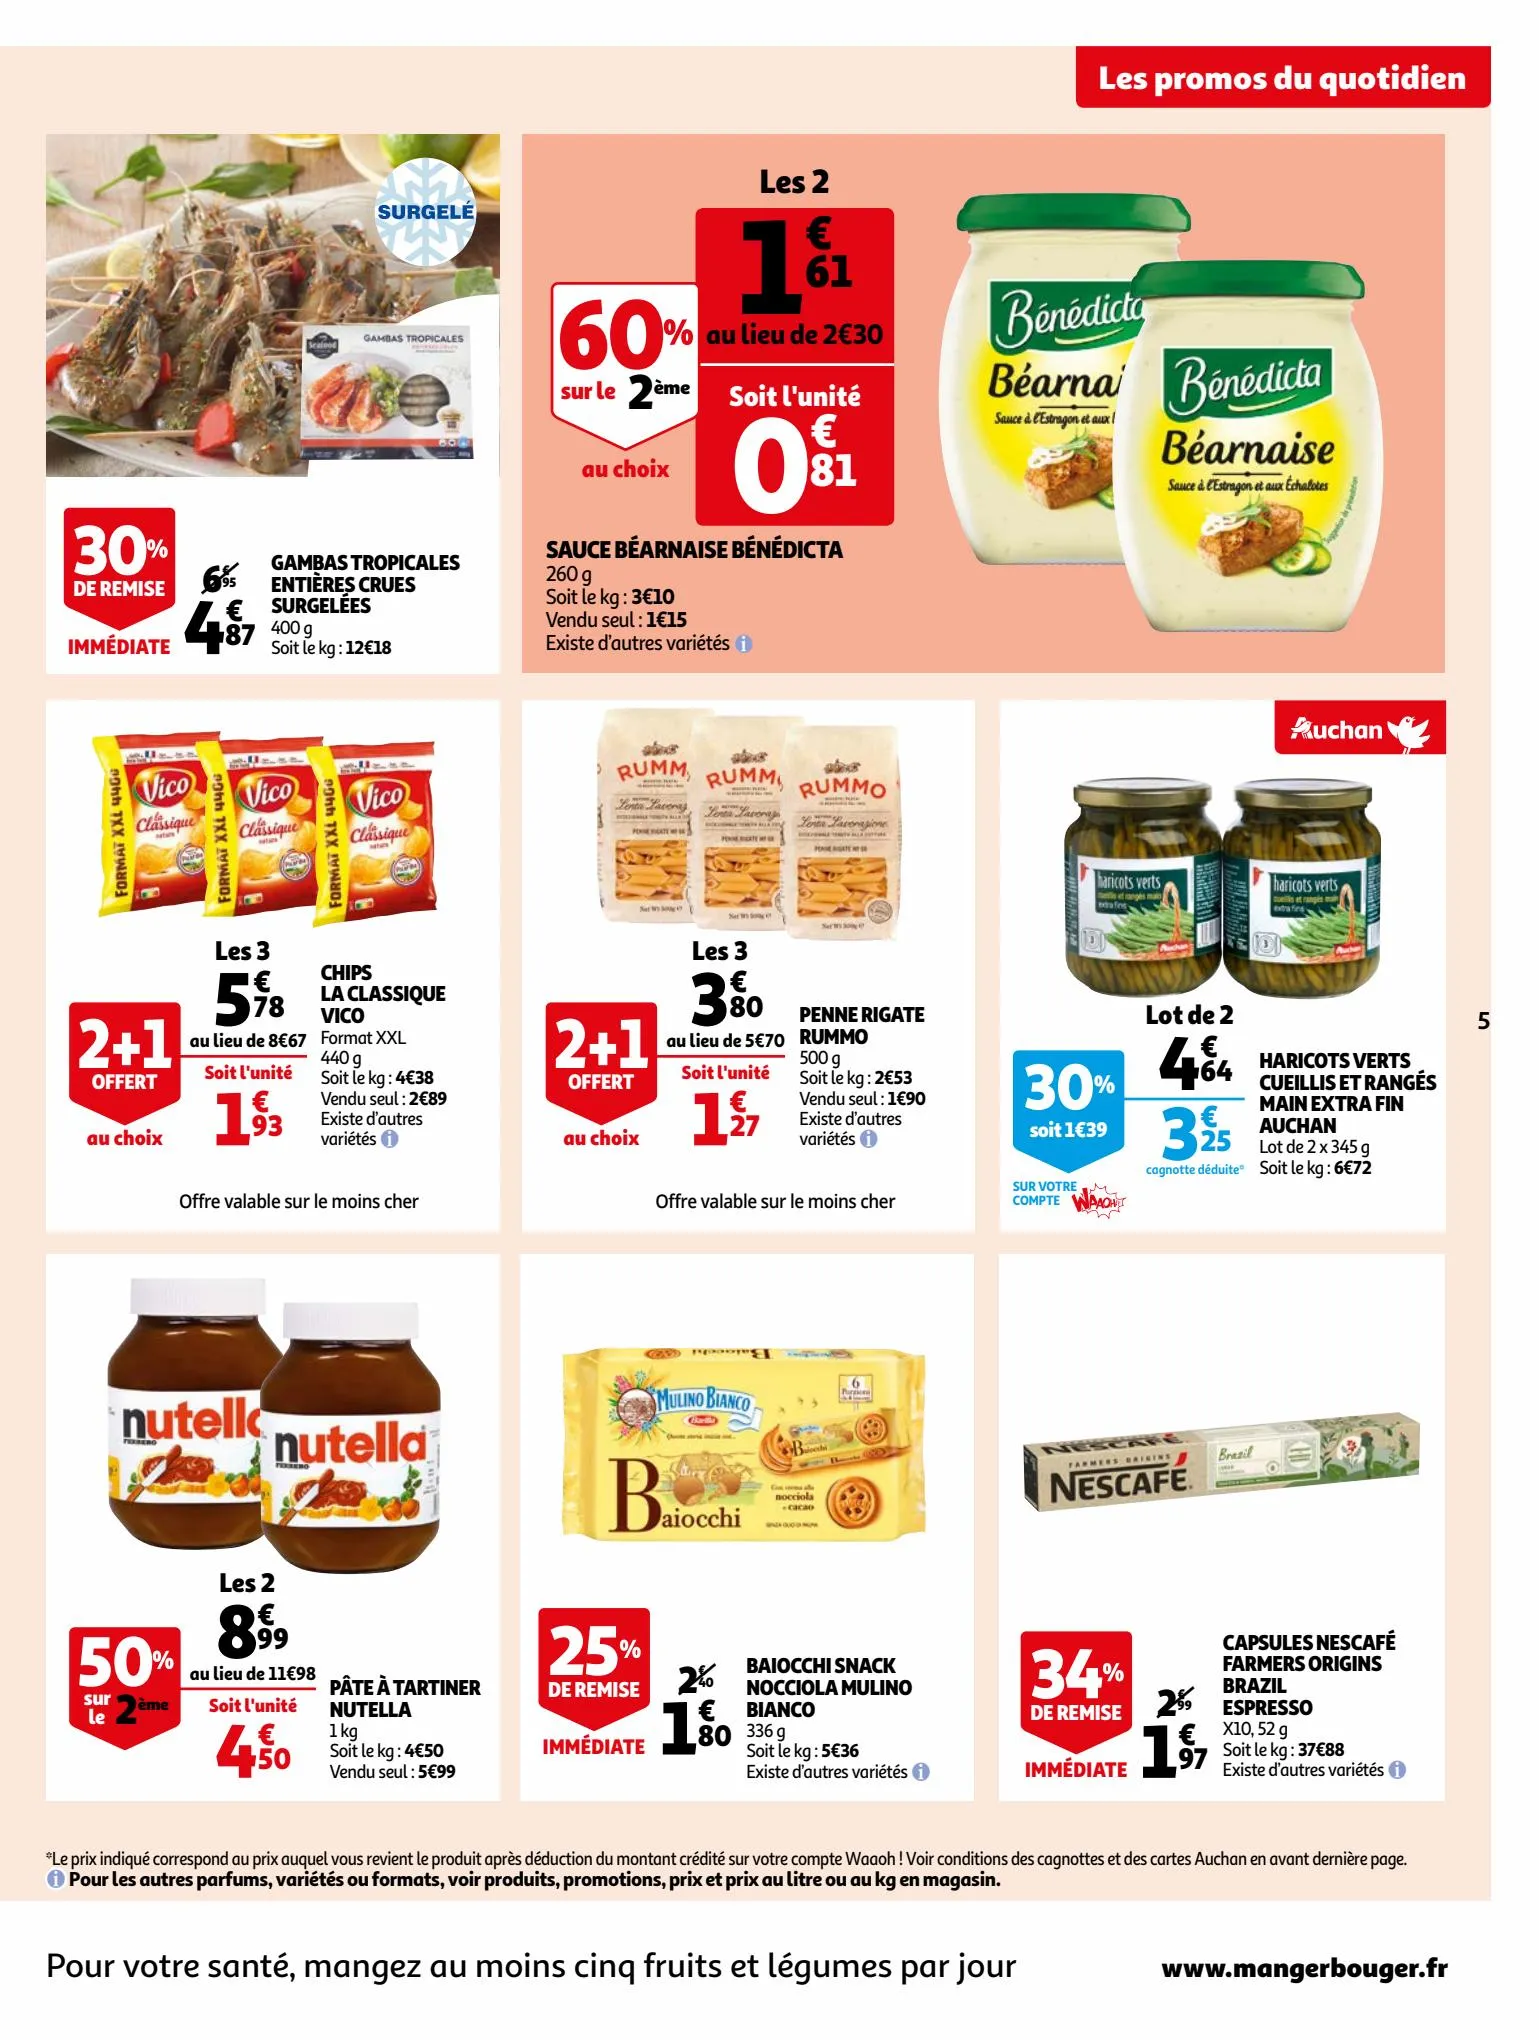 Catalogue Bio ou filière responsable, nos produits ont tout bon dans votre supermarché, page 00005